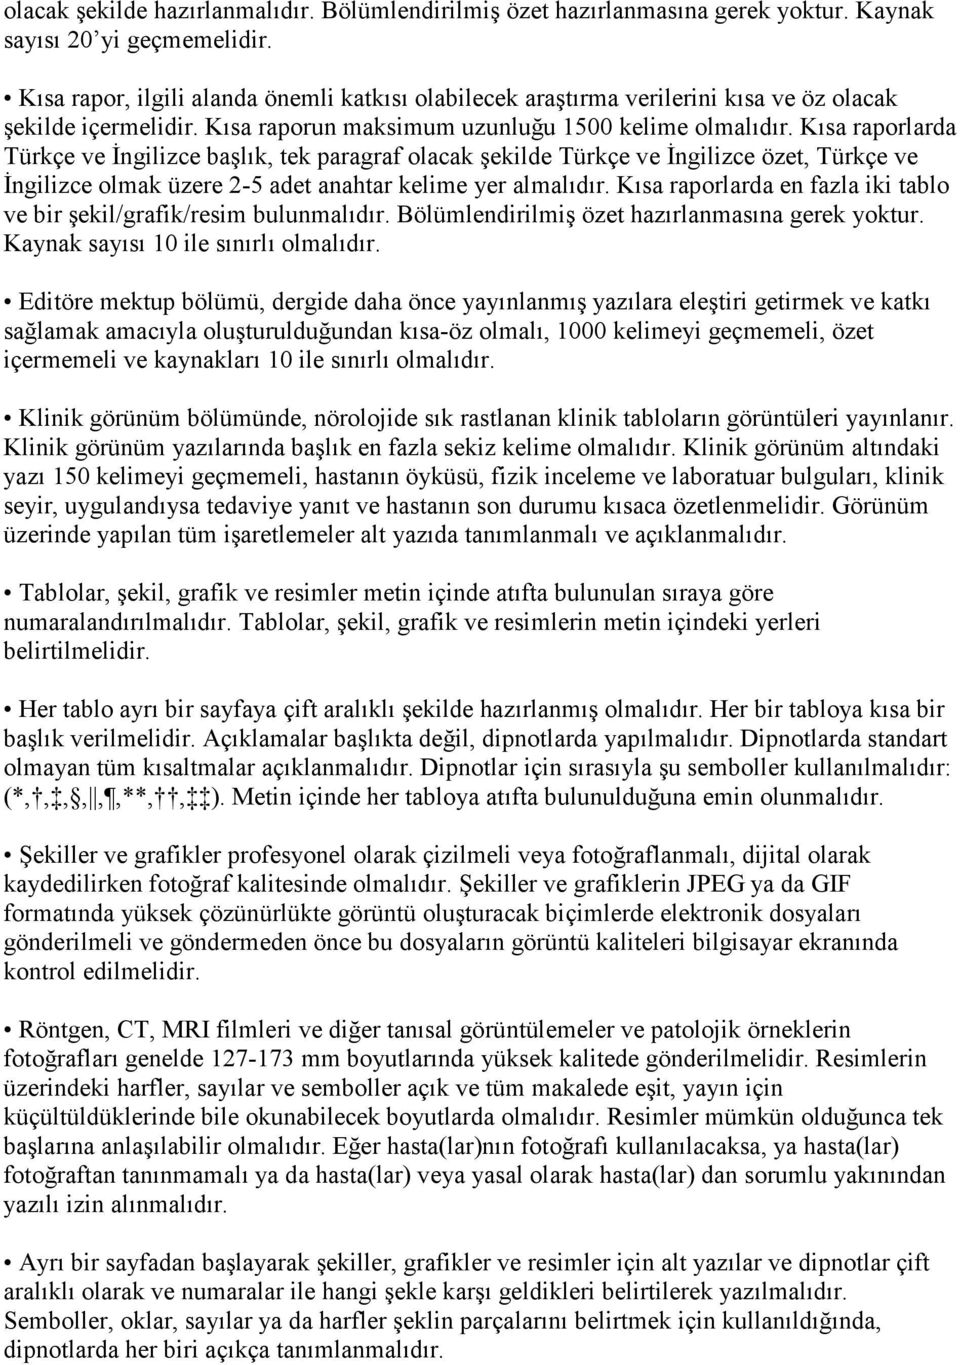 Kısa raporlarda Türkçe ve Đngilizce başlık, tek paragraf olacak şekilde Türkçe ve Đngilizce özet, Türkçe ve Đngilizce olmak üzere 2-5 adet anahtar kelime yer almalıdır.